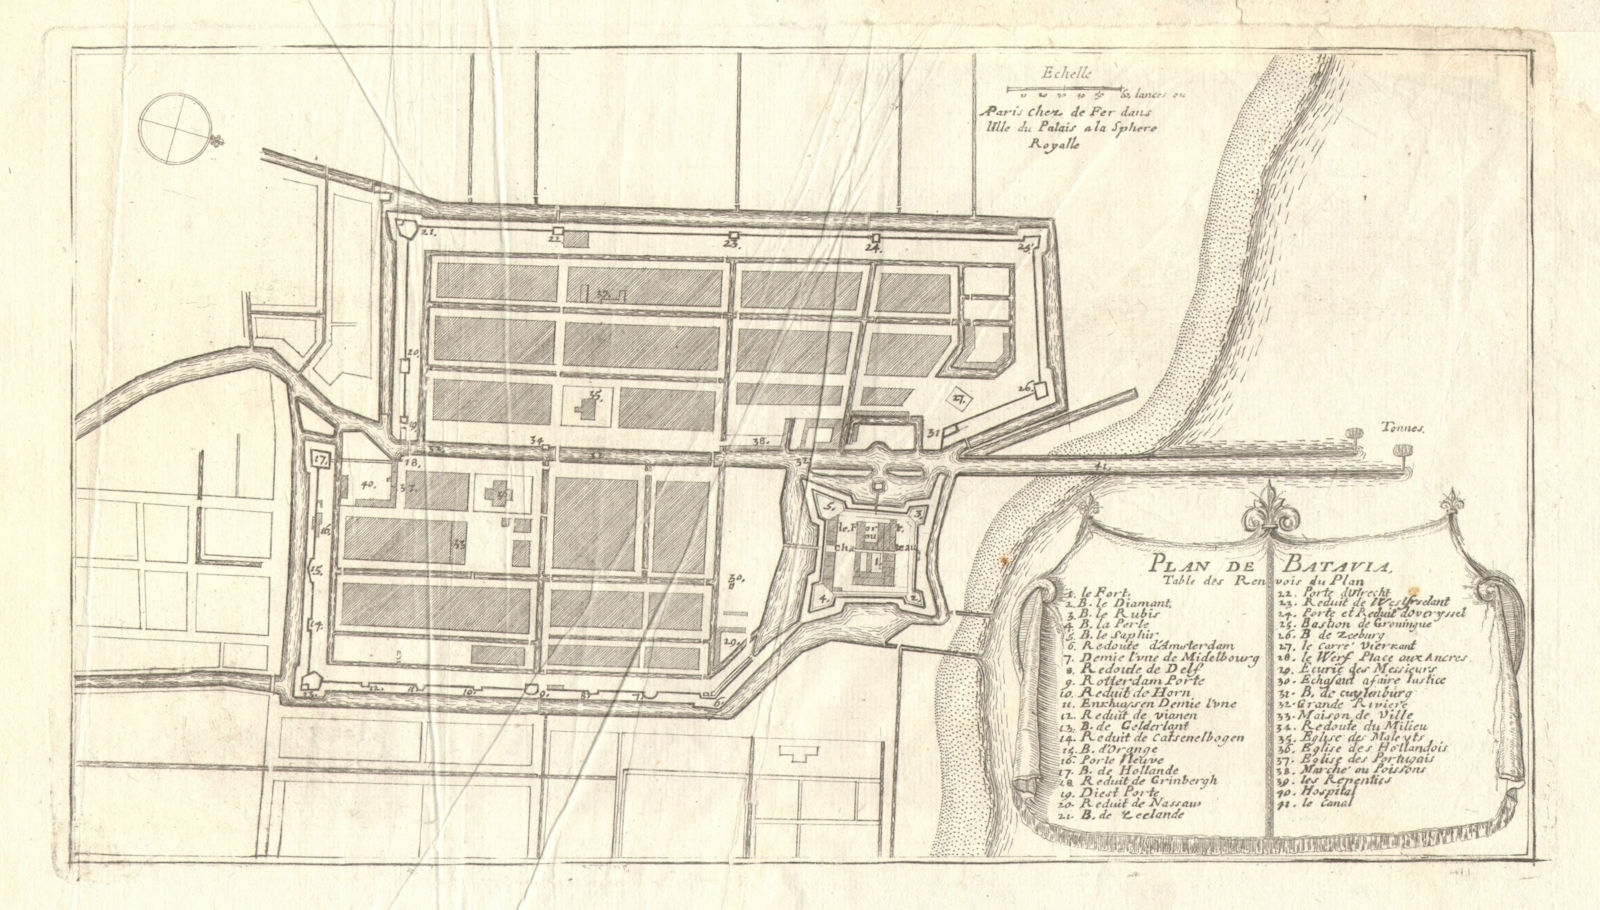 'Plan de Batavia'. Jakarta town/city plan. Dutch East Indies. DE FER 1705 map